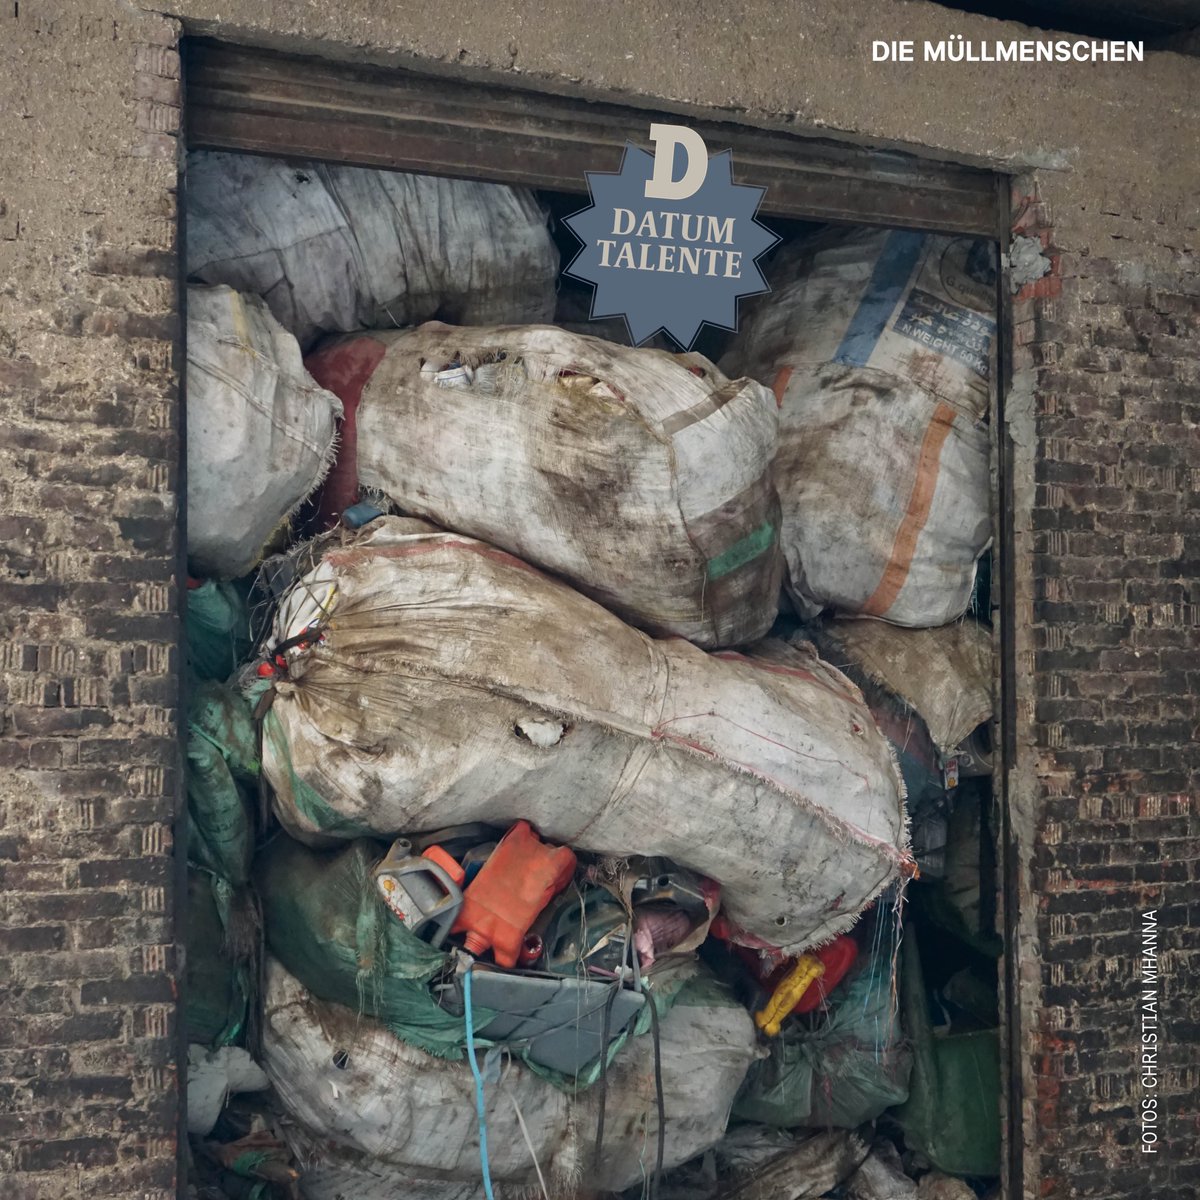 In Kairo sind die Menschen angewiesen auf eine Lösung ihres Müllproblems. Angewiesen auf die koptische Minderheit der Zabbaleen. DATUM-Talent @betaniabvida war vor Ort und hat mit den Bewohnern der Stadt auf Müll gesprochen. GRATIS lesen! ›› datum.at/stadt-auf-muel…